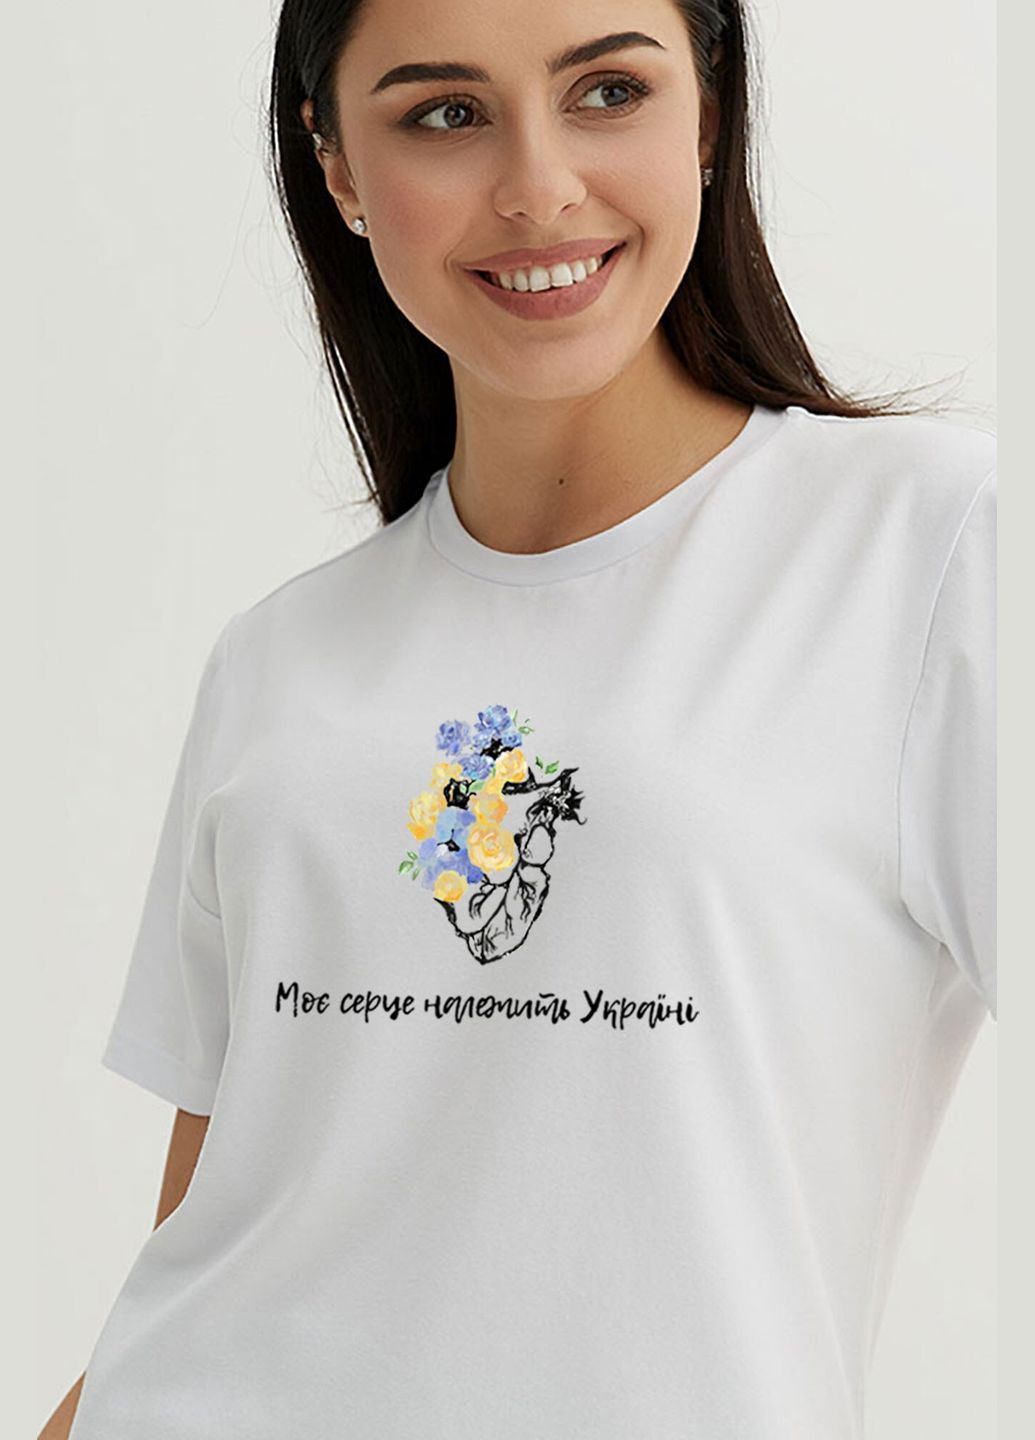 Белая летняя футболка моесердцепринадлежитукраине Garne